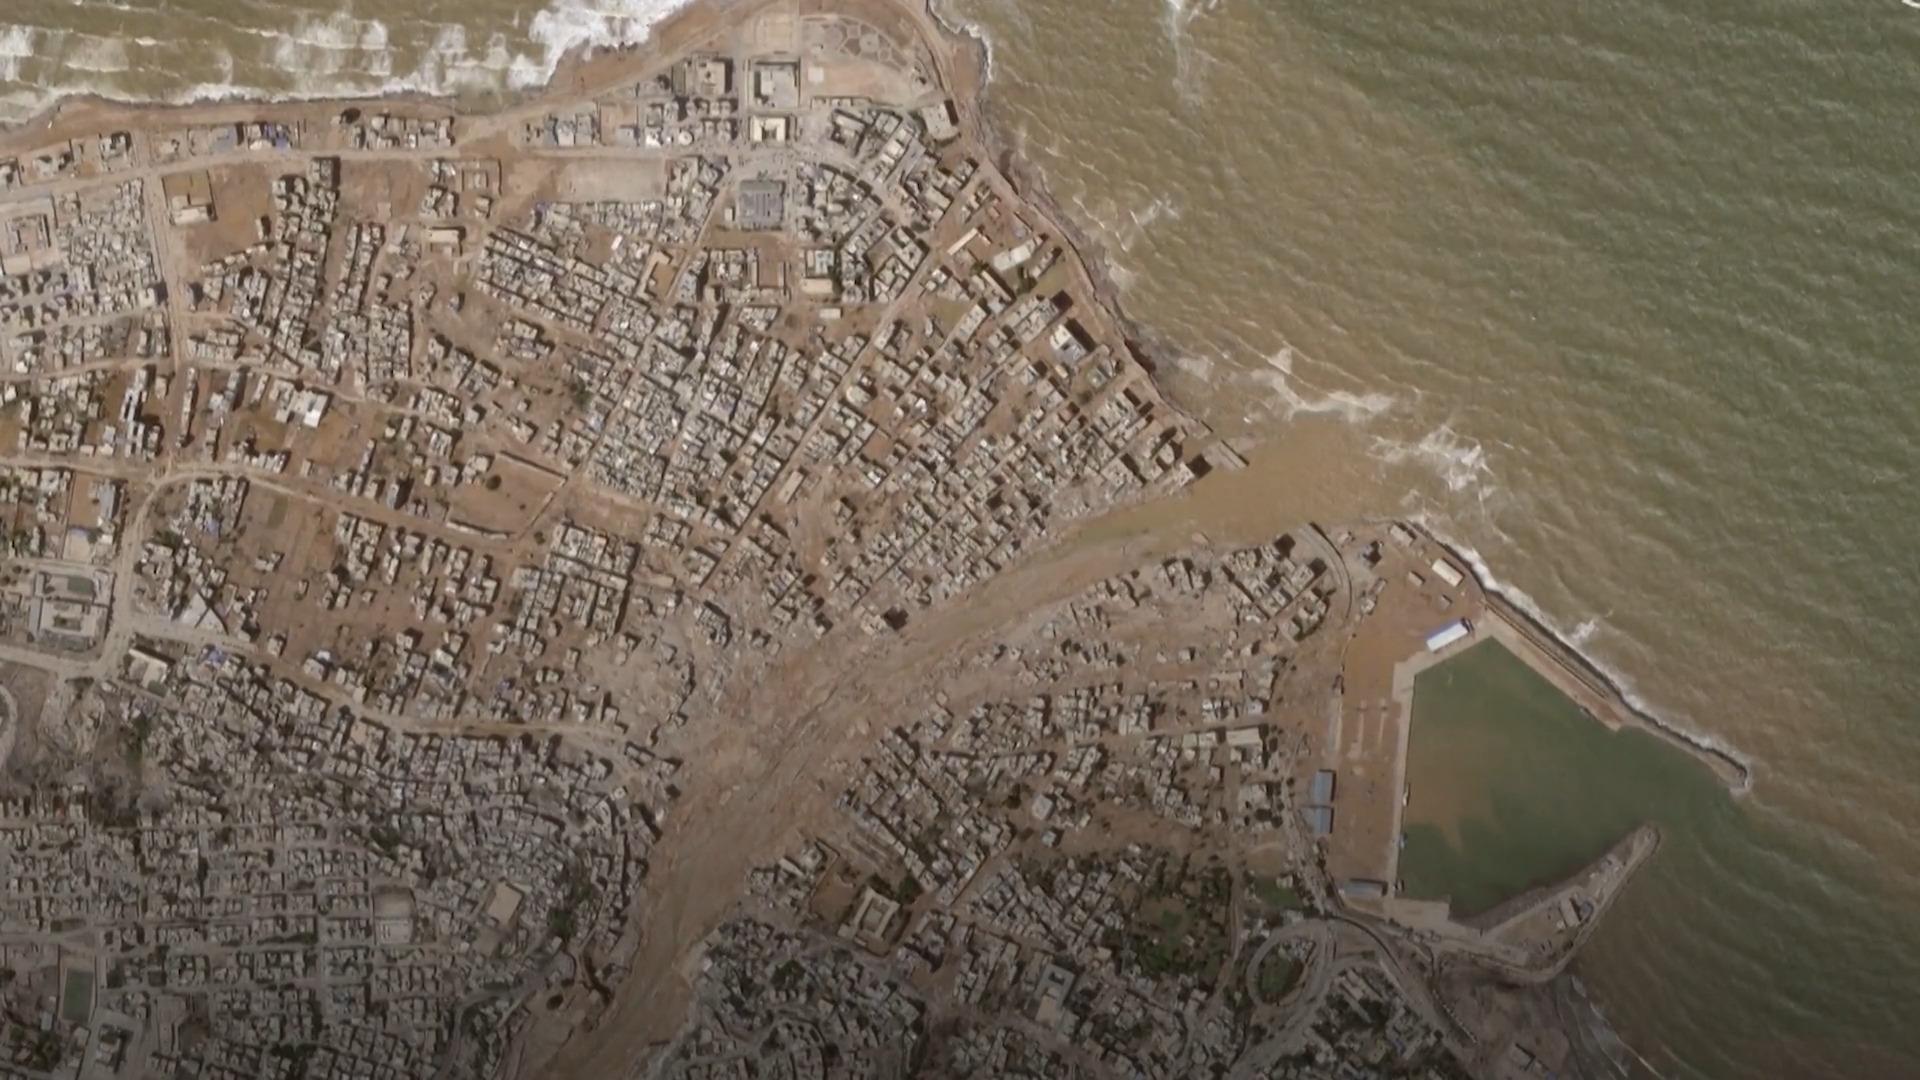 Dämme gebrochen: Vorher-Nachher-Bilder zeigen Verwüstung Stadtviertel in Libyen weggespült